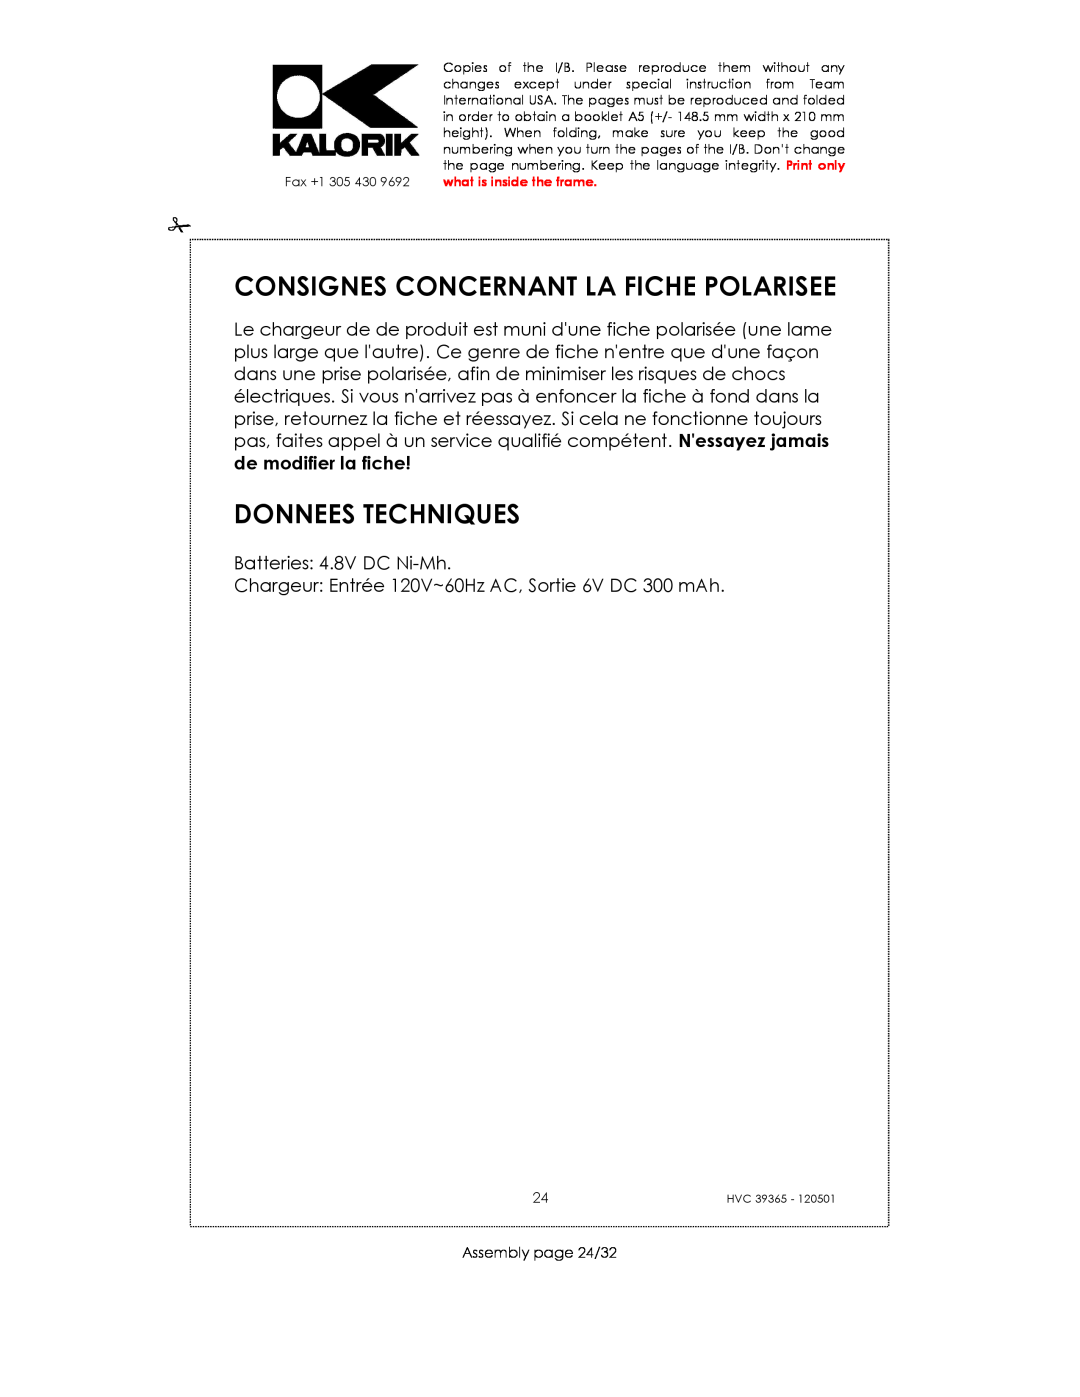 Kalorik HVC 39365 manual Consignes Concernant La Fiche Polarisee, Donnees Techniques 